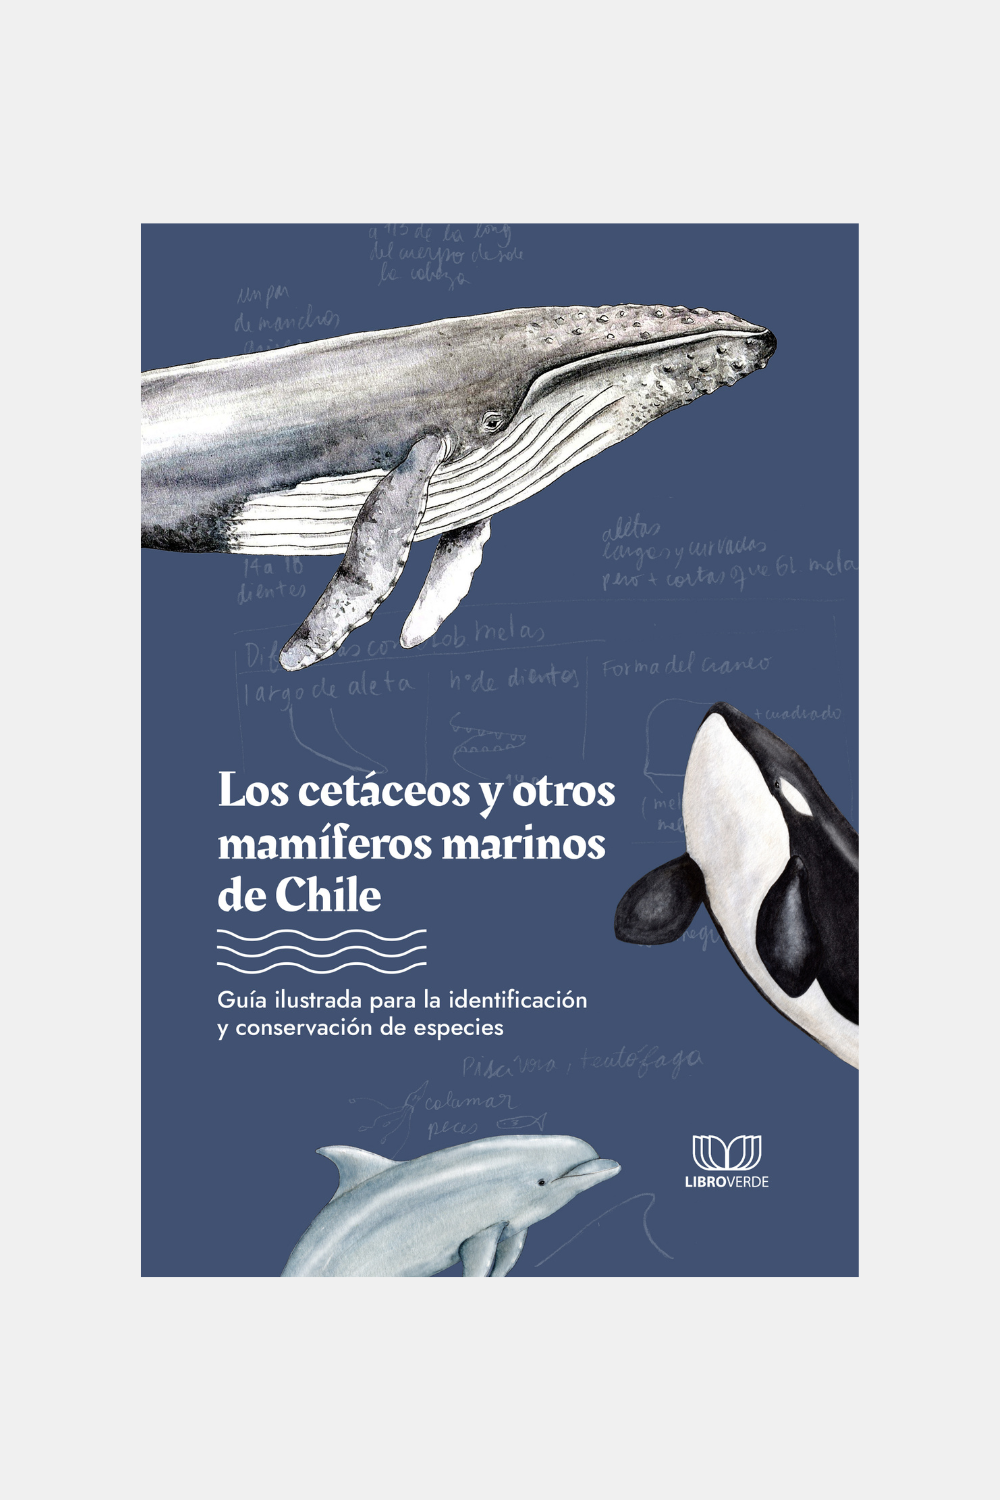 Libro "Los Cetáceos y Otros Mamíferos Marinos de Chile"